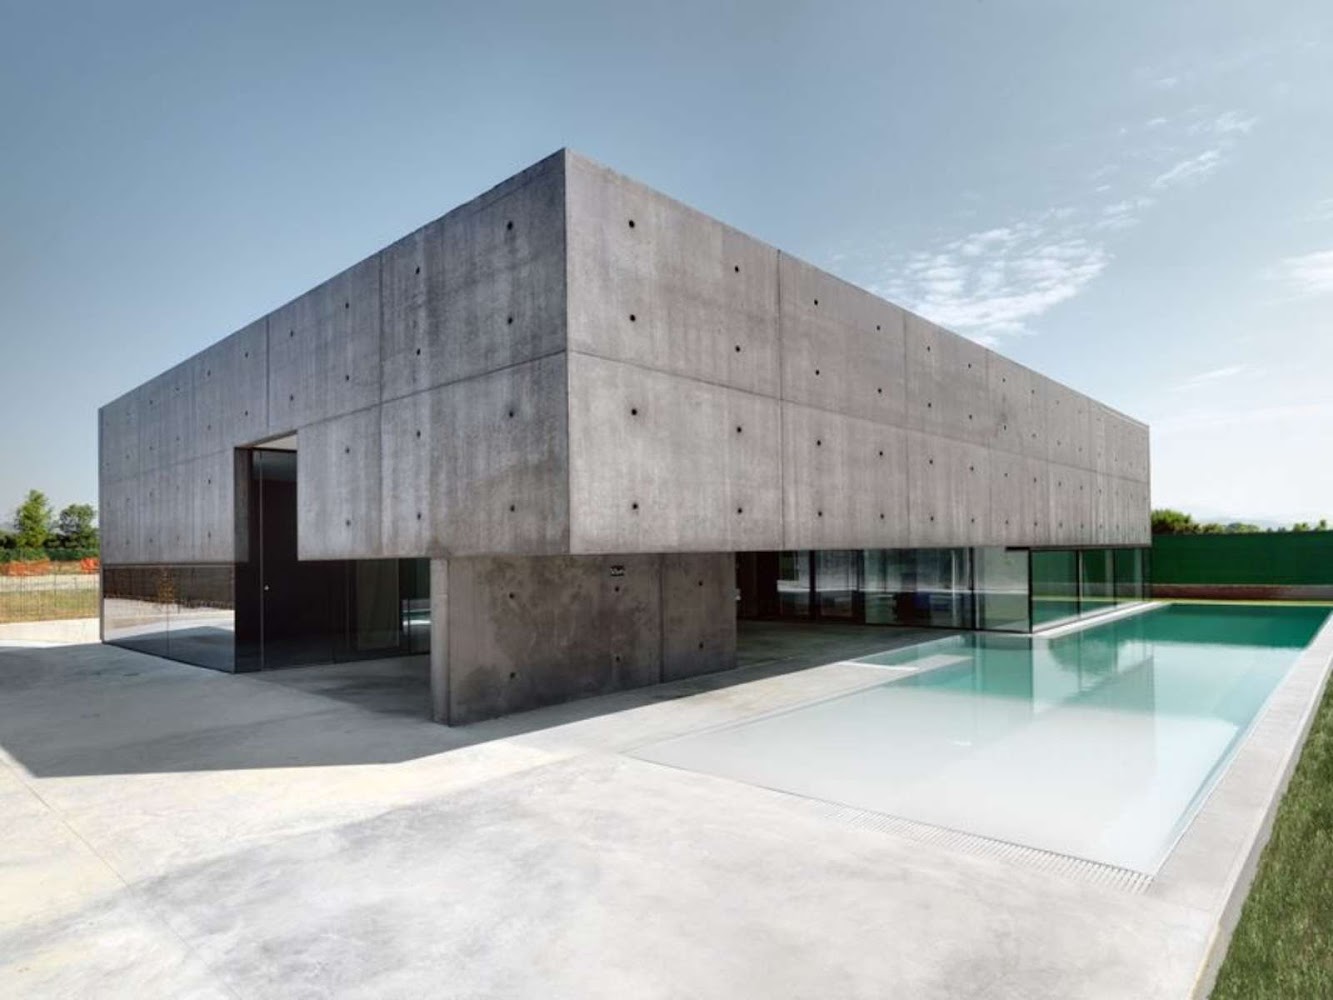 House in Urgnano by Matteo Casari Architetti